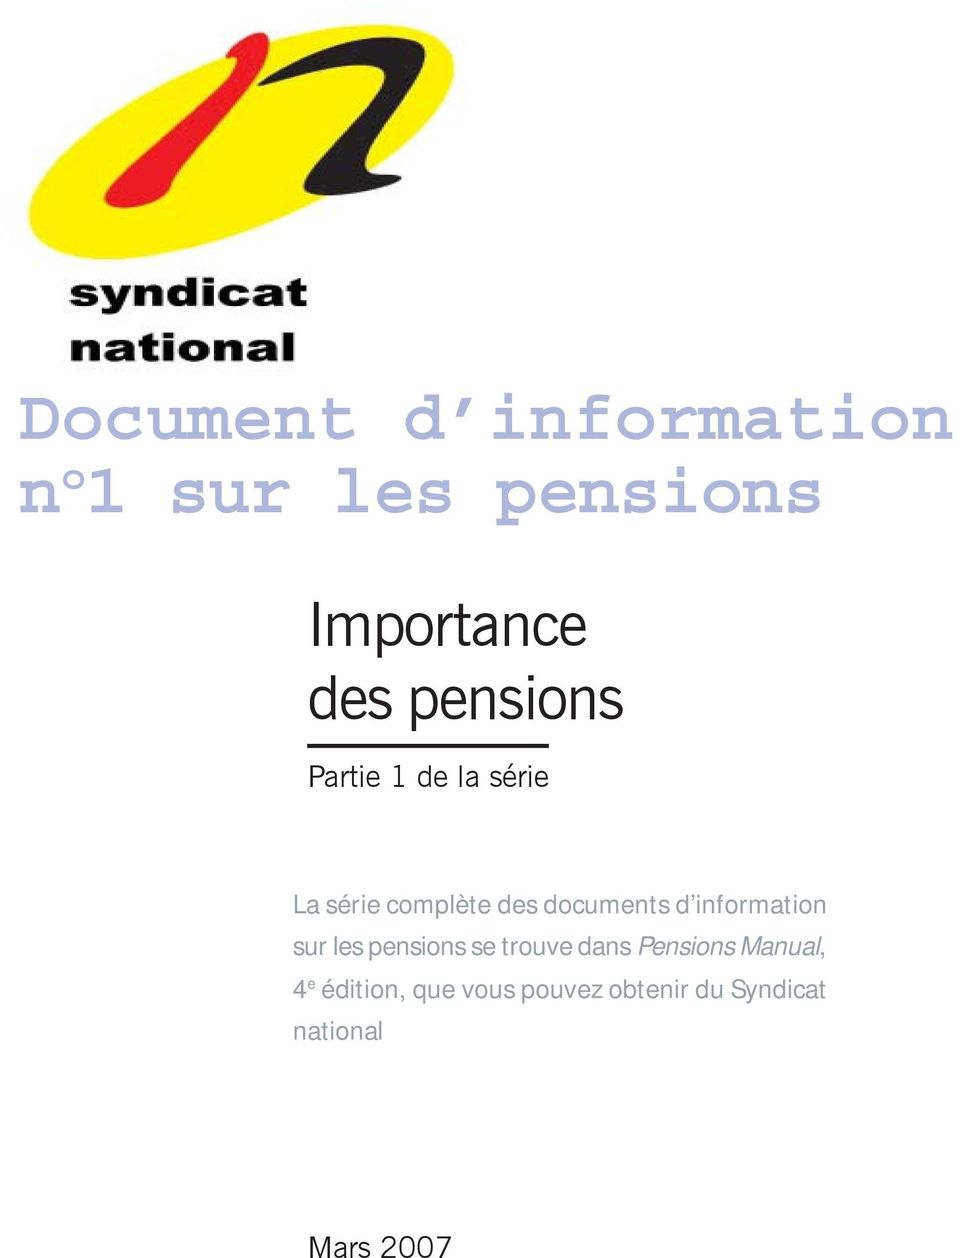 information sur les pensions se trouve dans Pensions Manual, 4